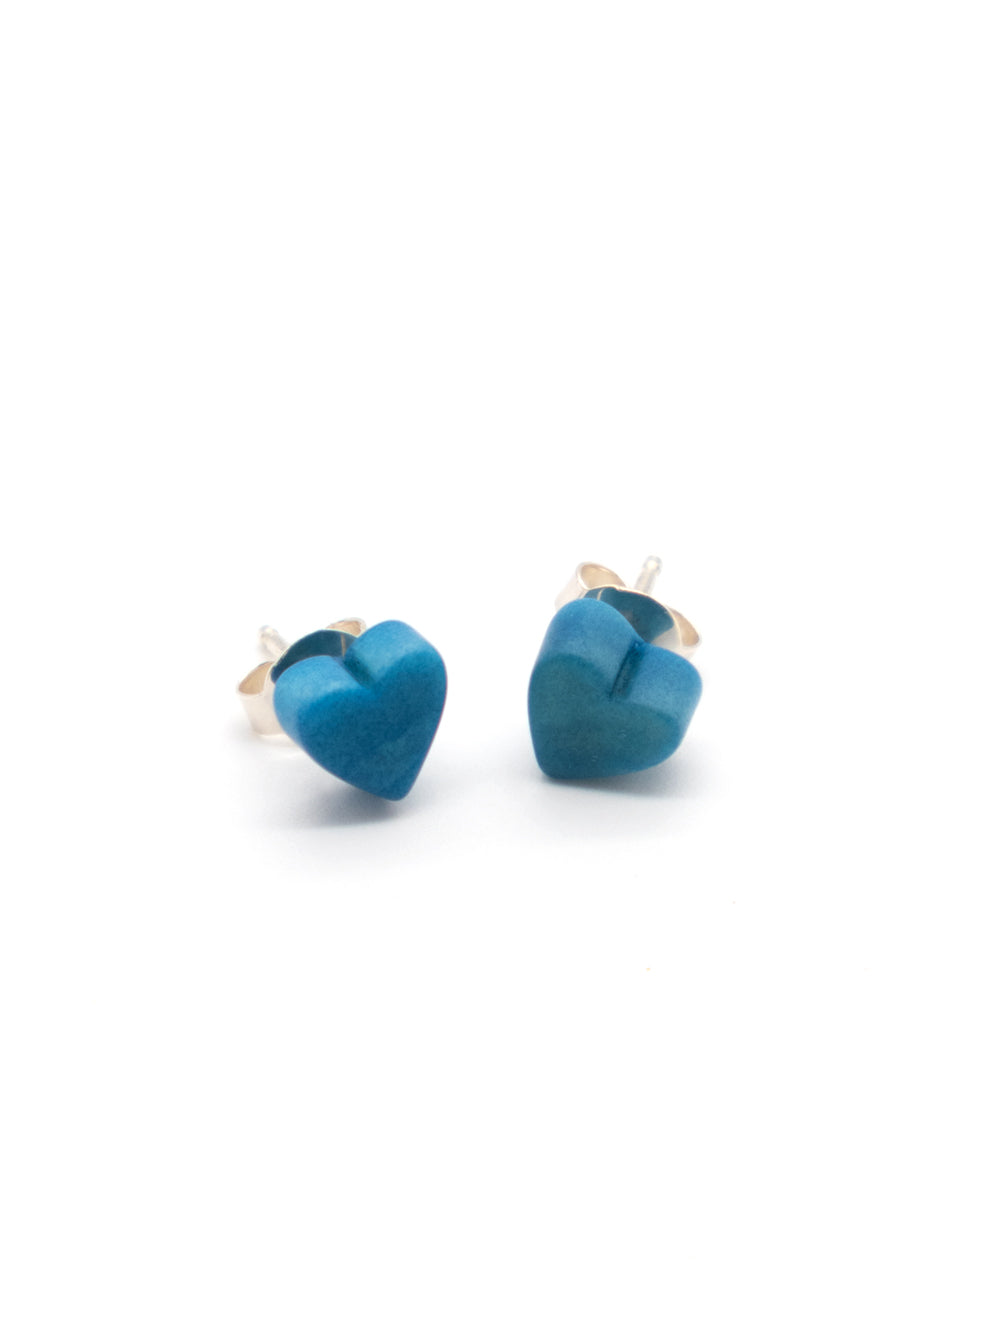 Heart stud earrings Corazones blue - LaTagua nut earrings silver